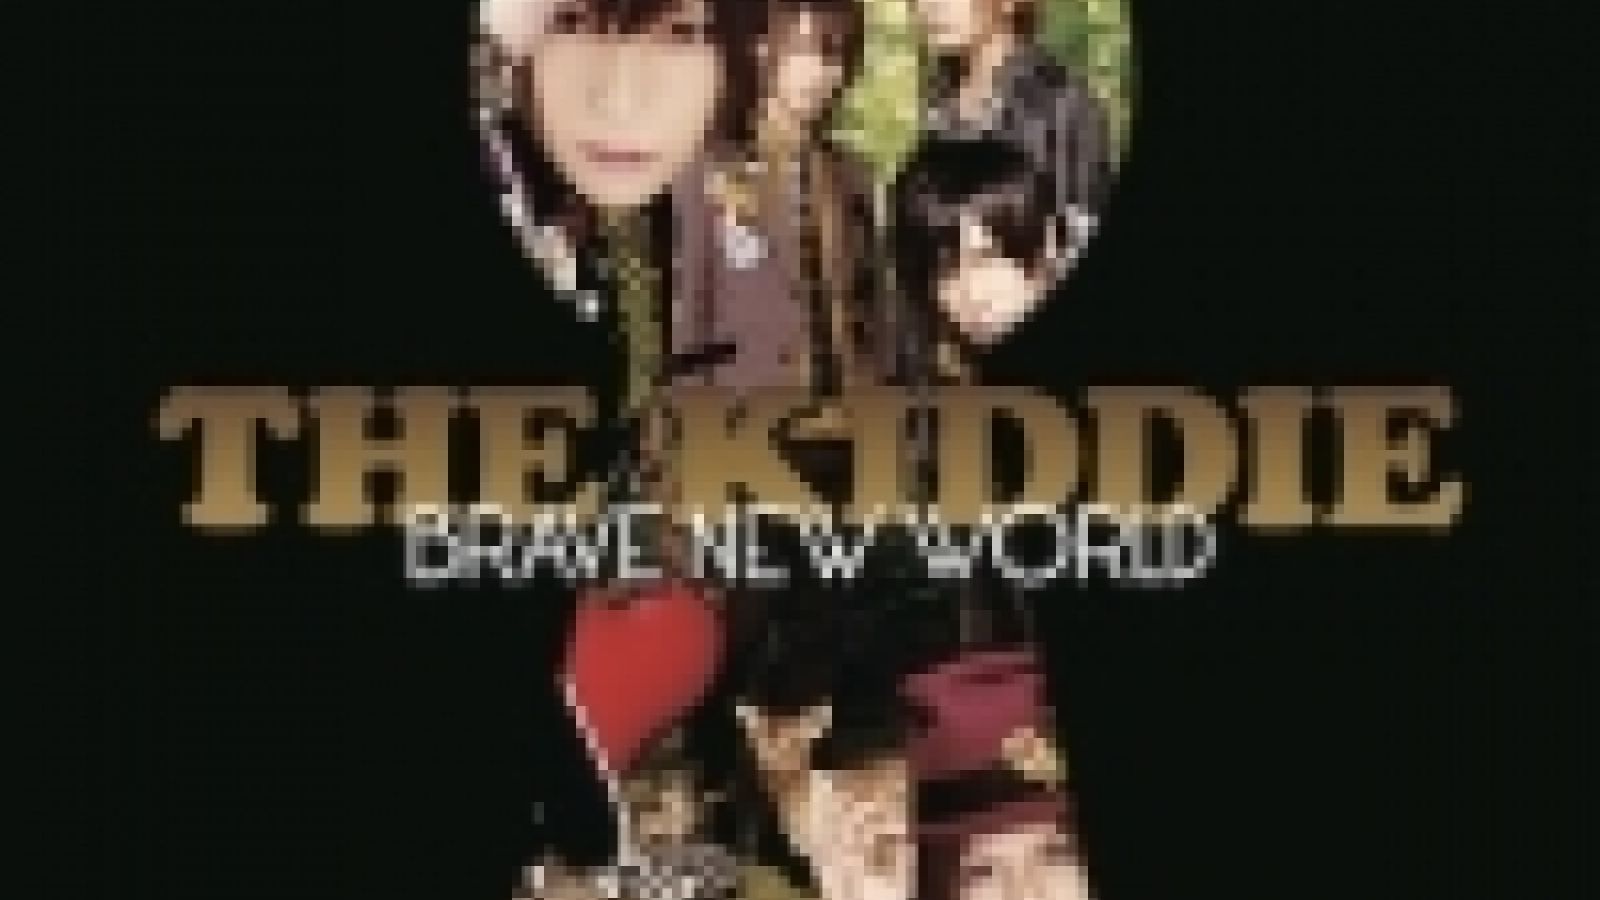 THE KIDDIE - BRAVE NEW WORLD © THE KIDDIE